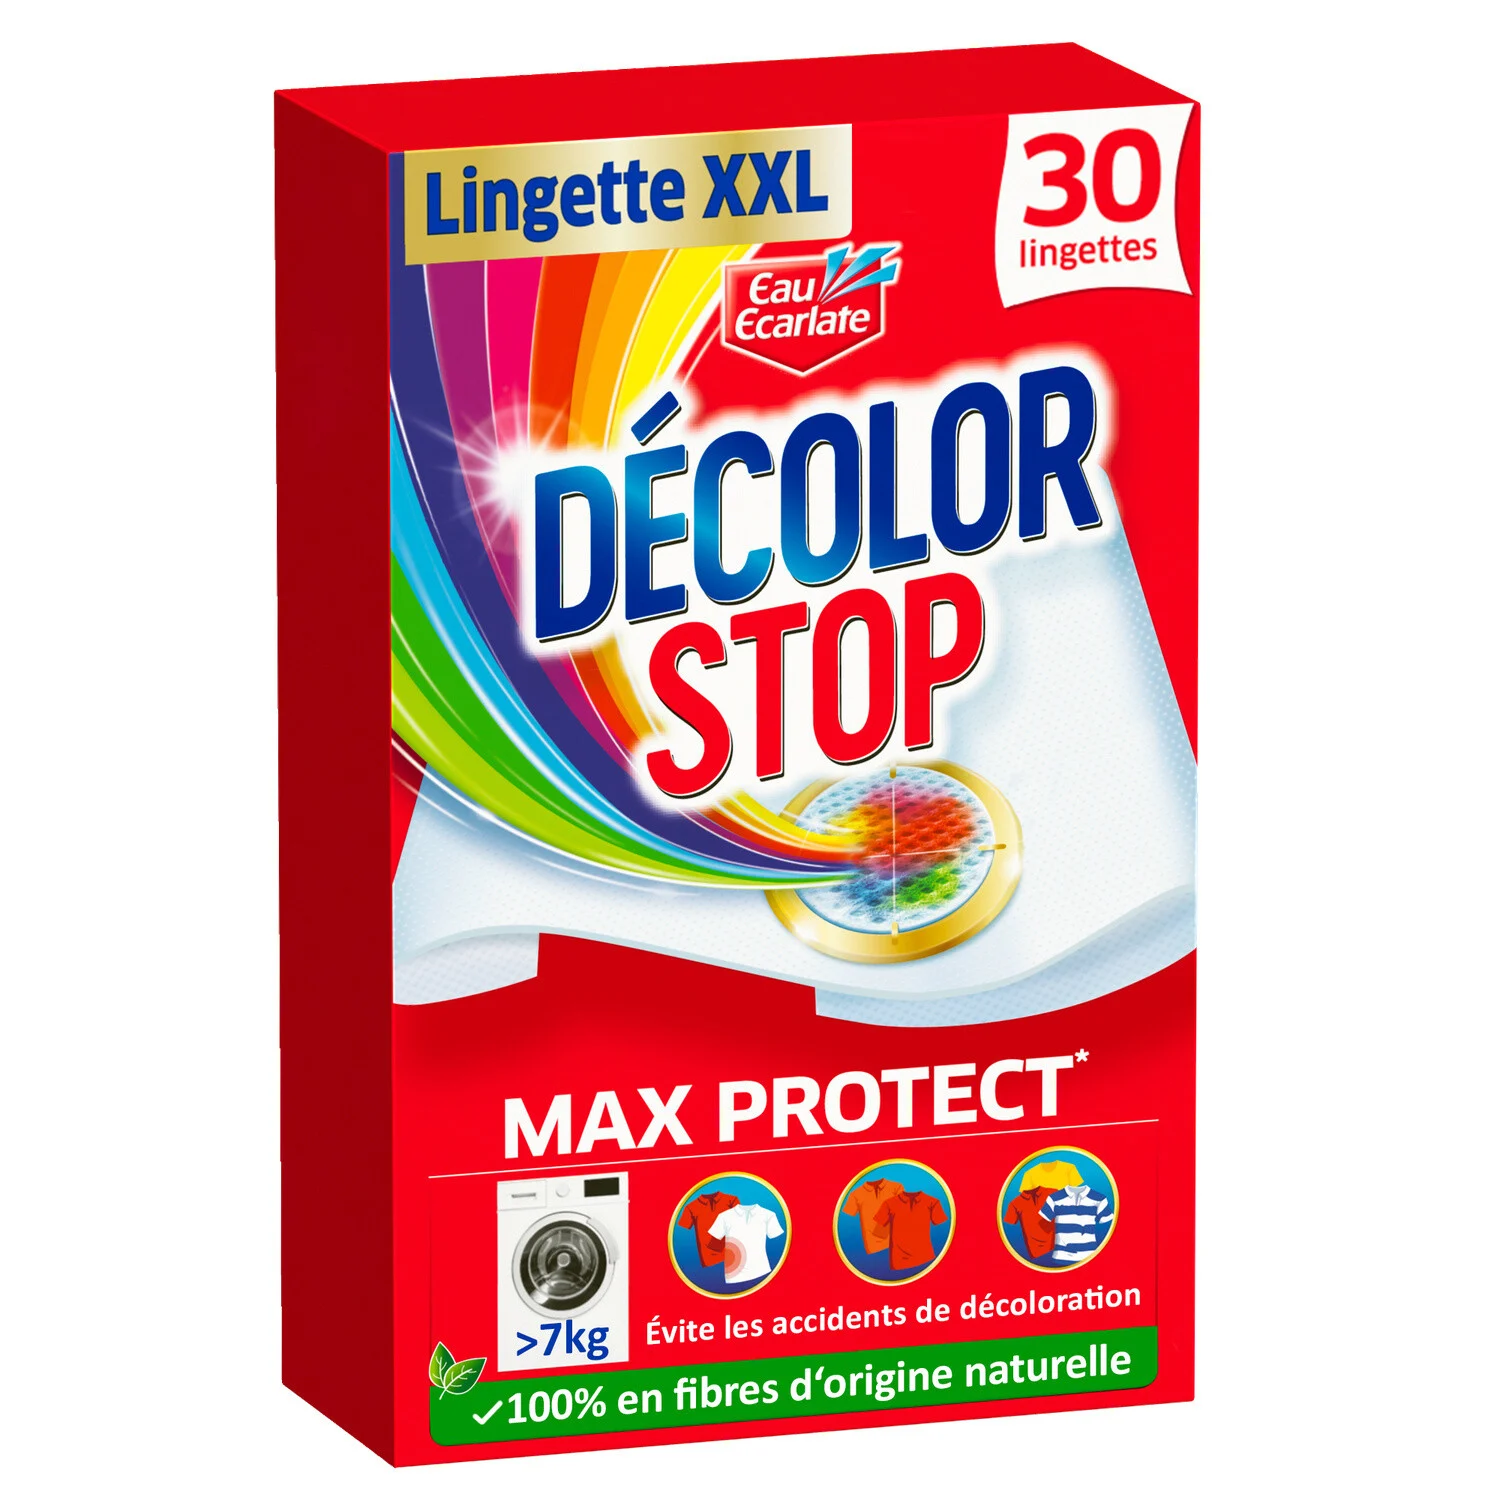 Lingette Anti-décoloration Xxl Max Protect X30 - Decolor Stop